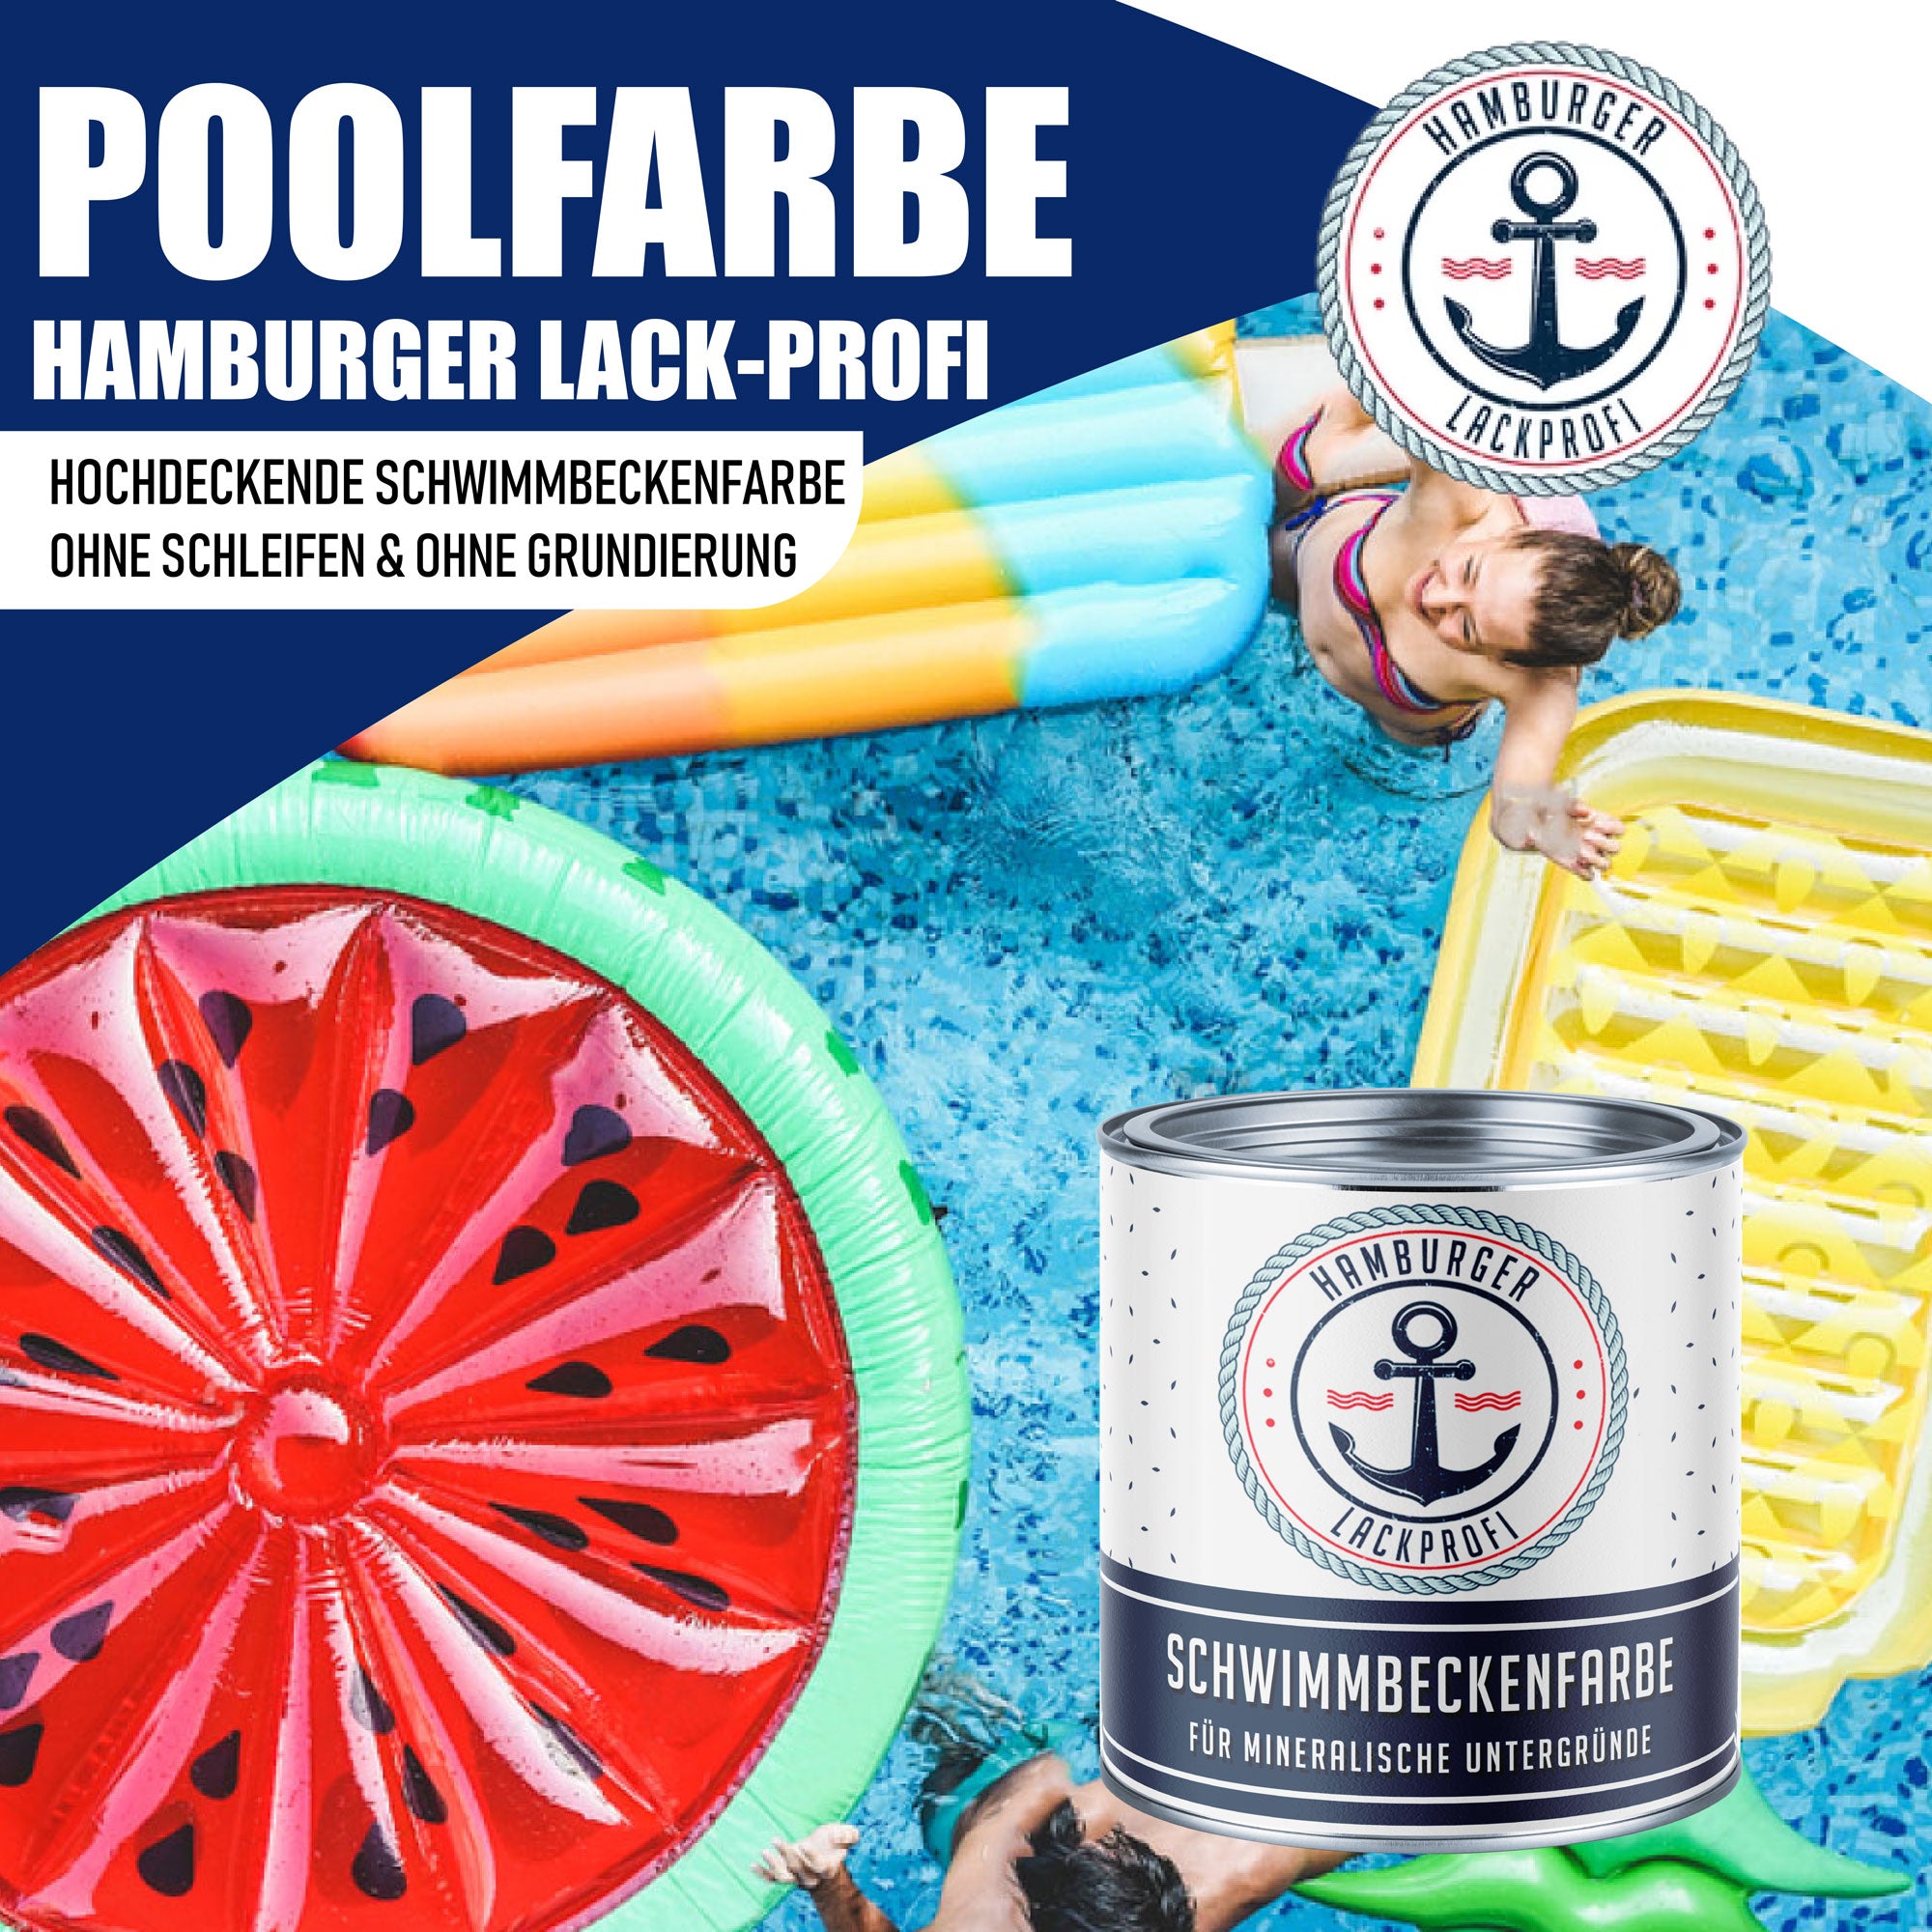 Hamburger Lack-Profi Schwimmbeckenfarbe Erikaviolett RAL 4003 - hochdeckende Poolfarbe